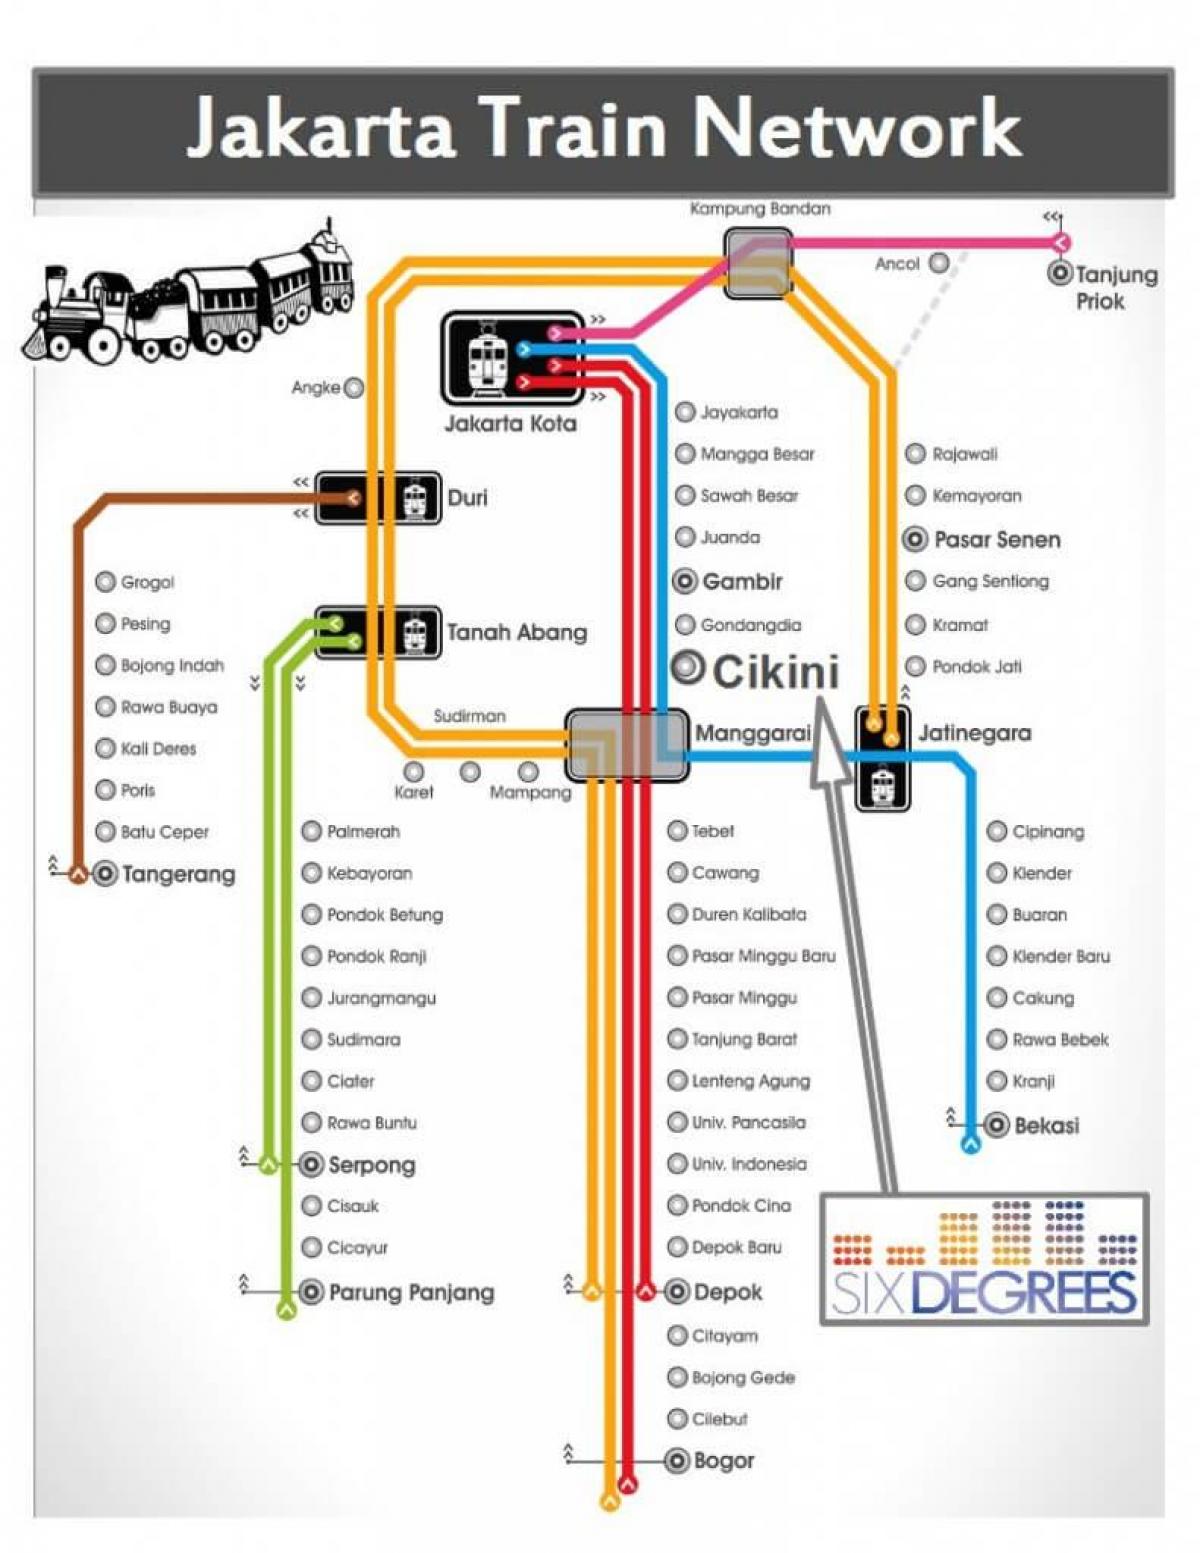 mapa de Jakarta de l'estació de tren